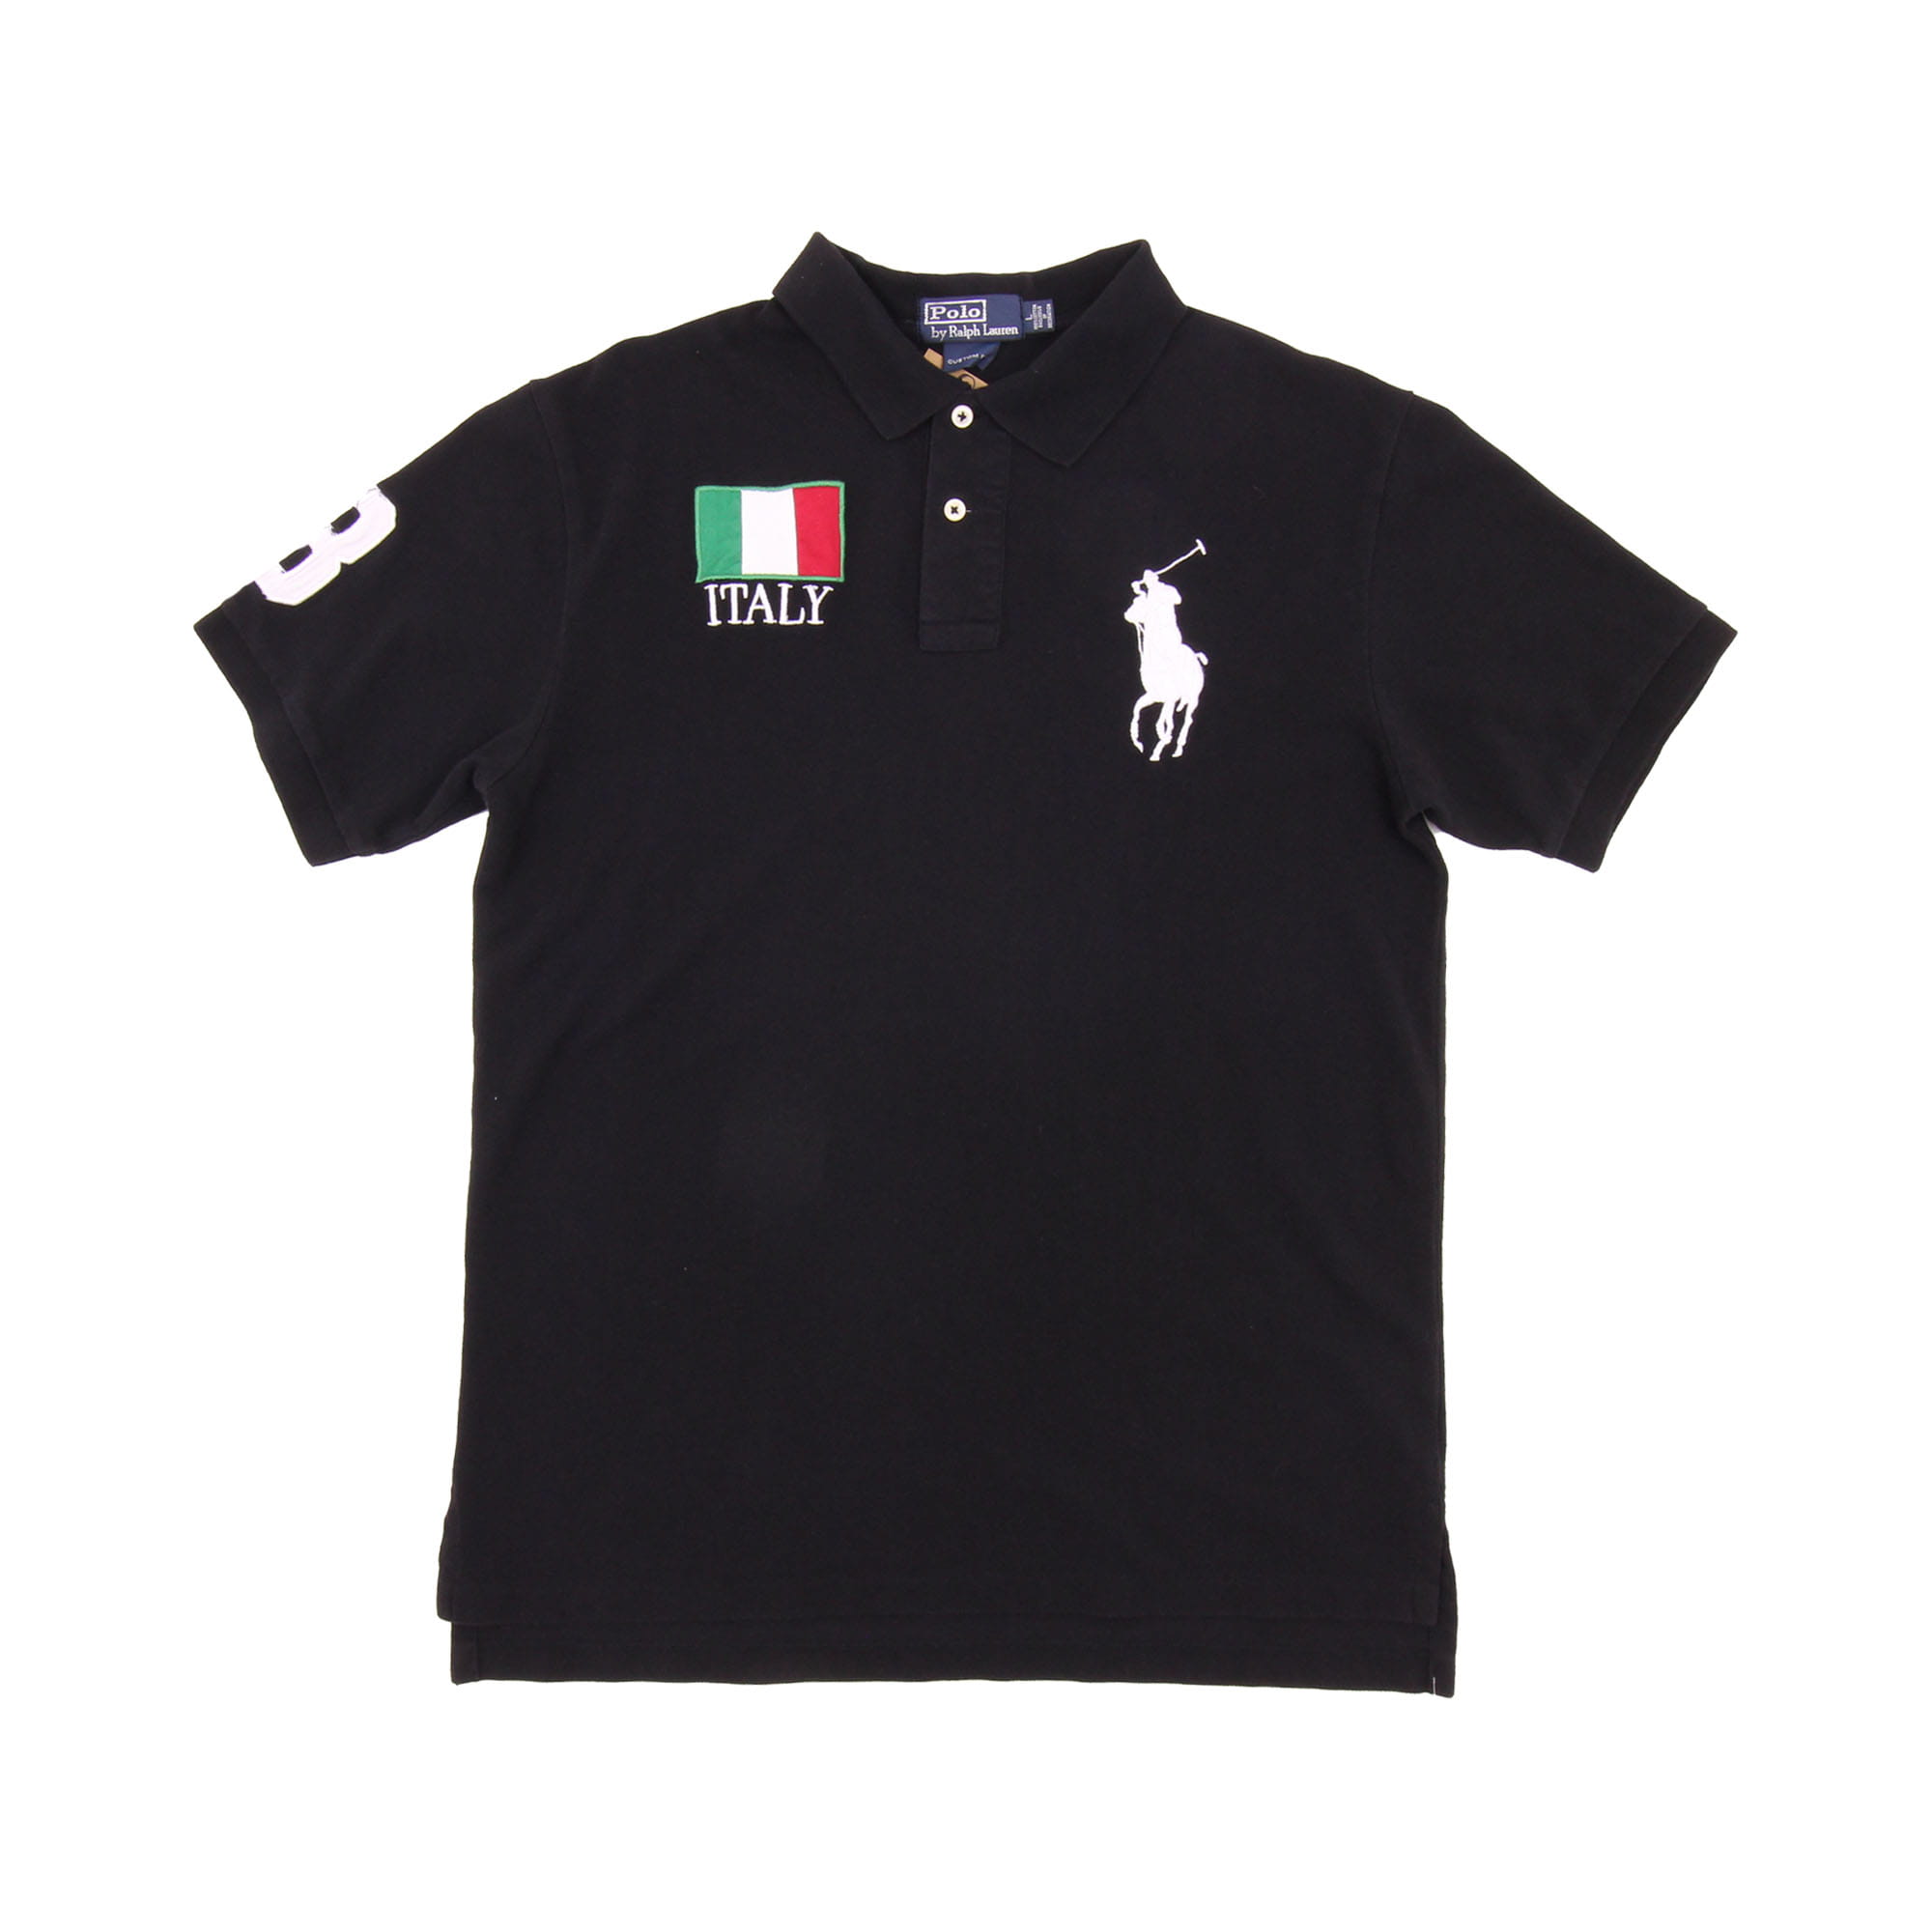 Polo Ralph Lauren Italy Polo Shirt - L 